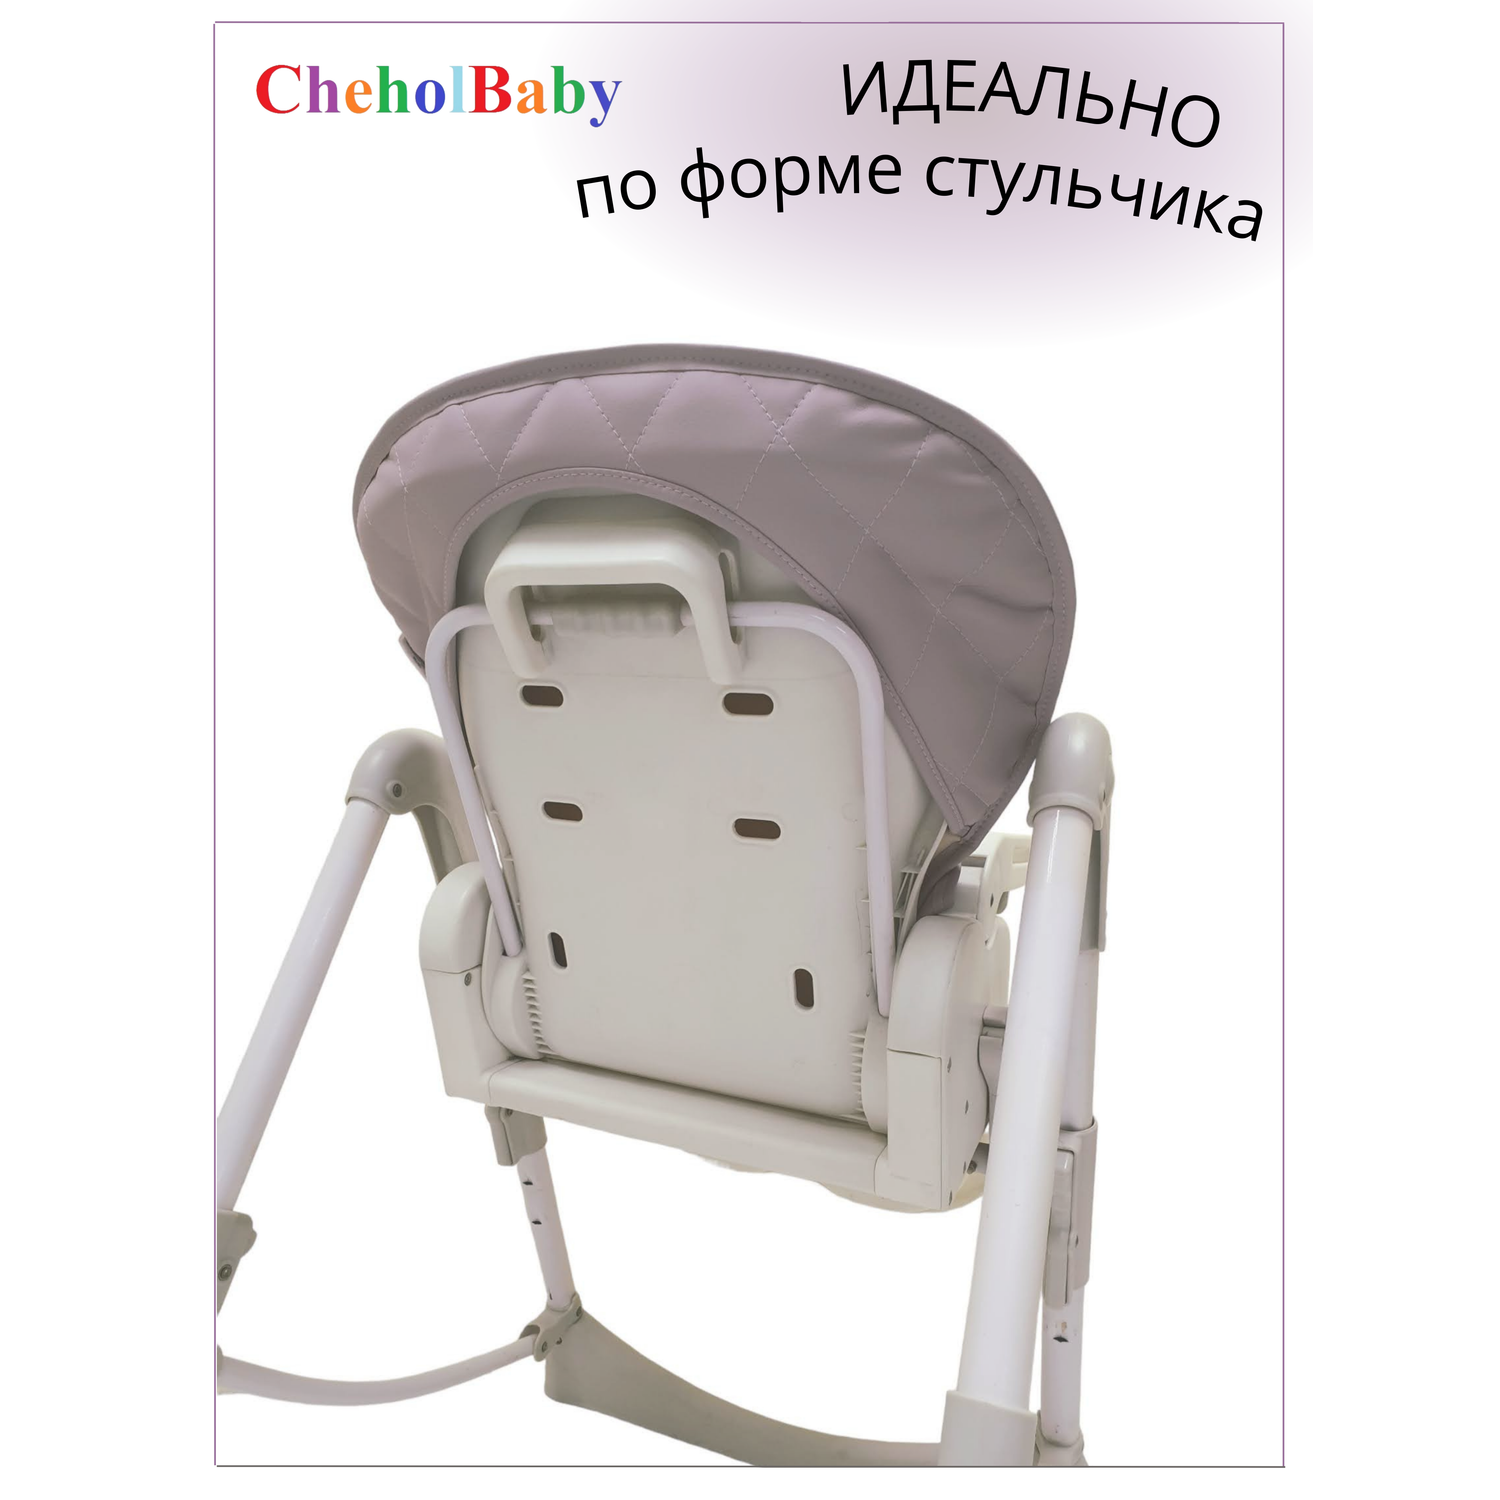 Чехол на детский стульчик CheholBaby на детский стульчик для кормления - фото 2